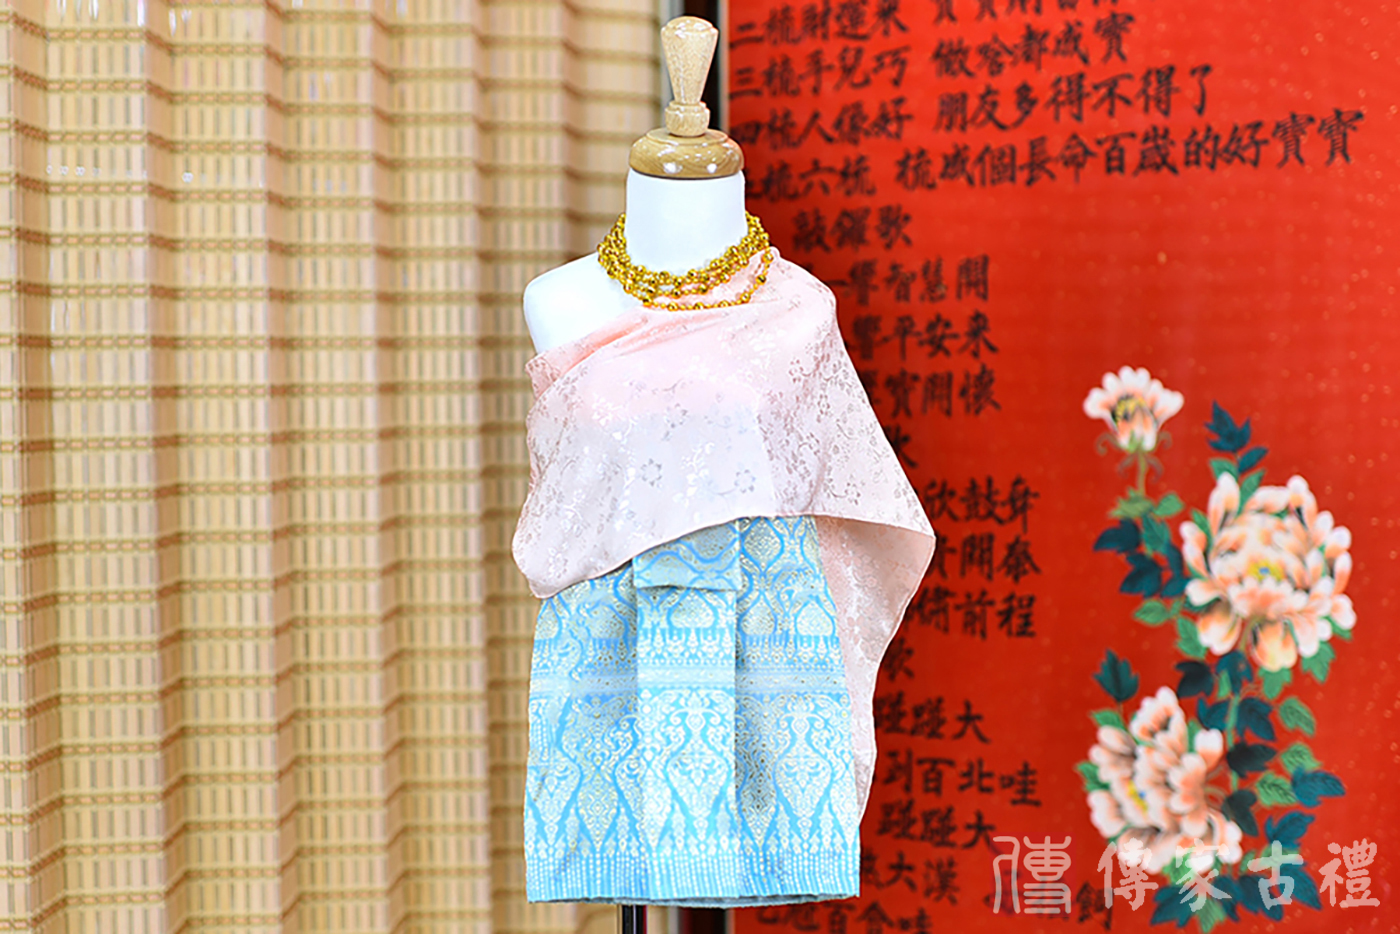 2024-02-22小孩皇室泰服古裝禮服。淺粉色的紋路披肩搭配藍色波浪紋路裙裝的泰式古裝禮服。照片集